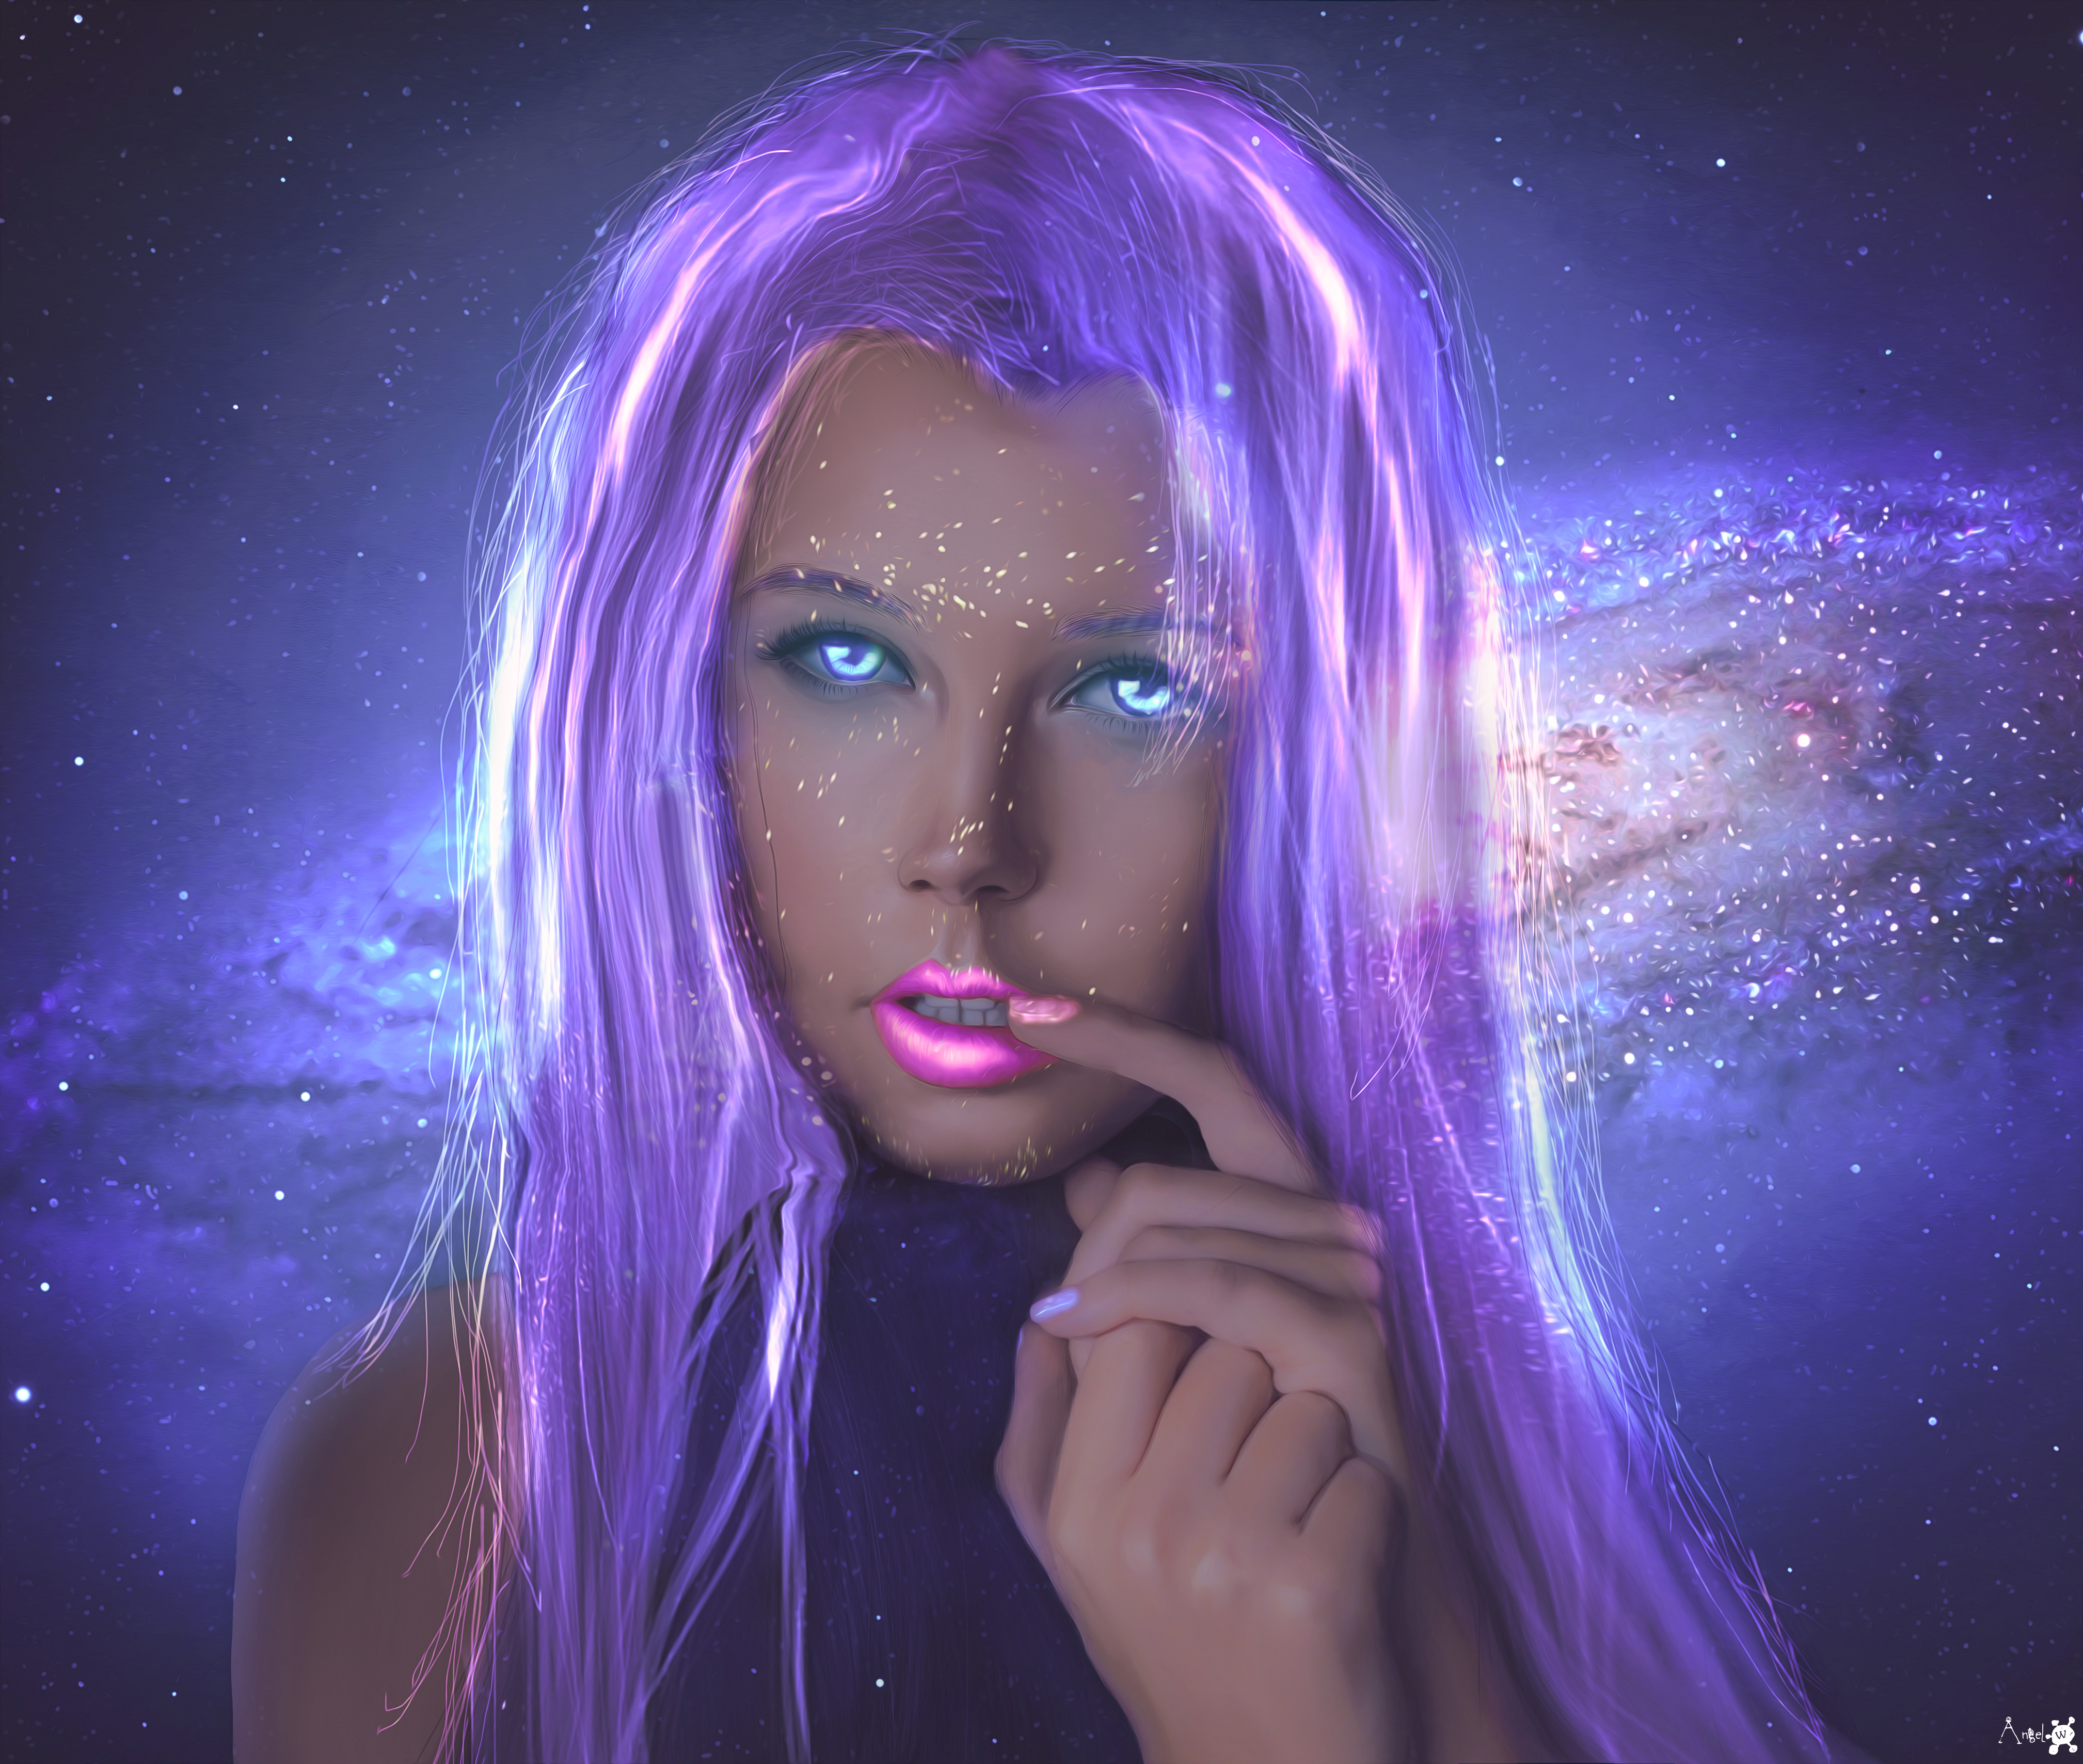 General 4035x3417 artwork digital painting women face blue eyes painted nails purple hair digital art